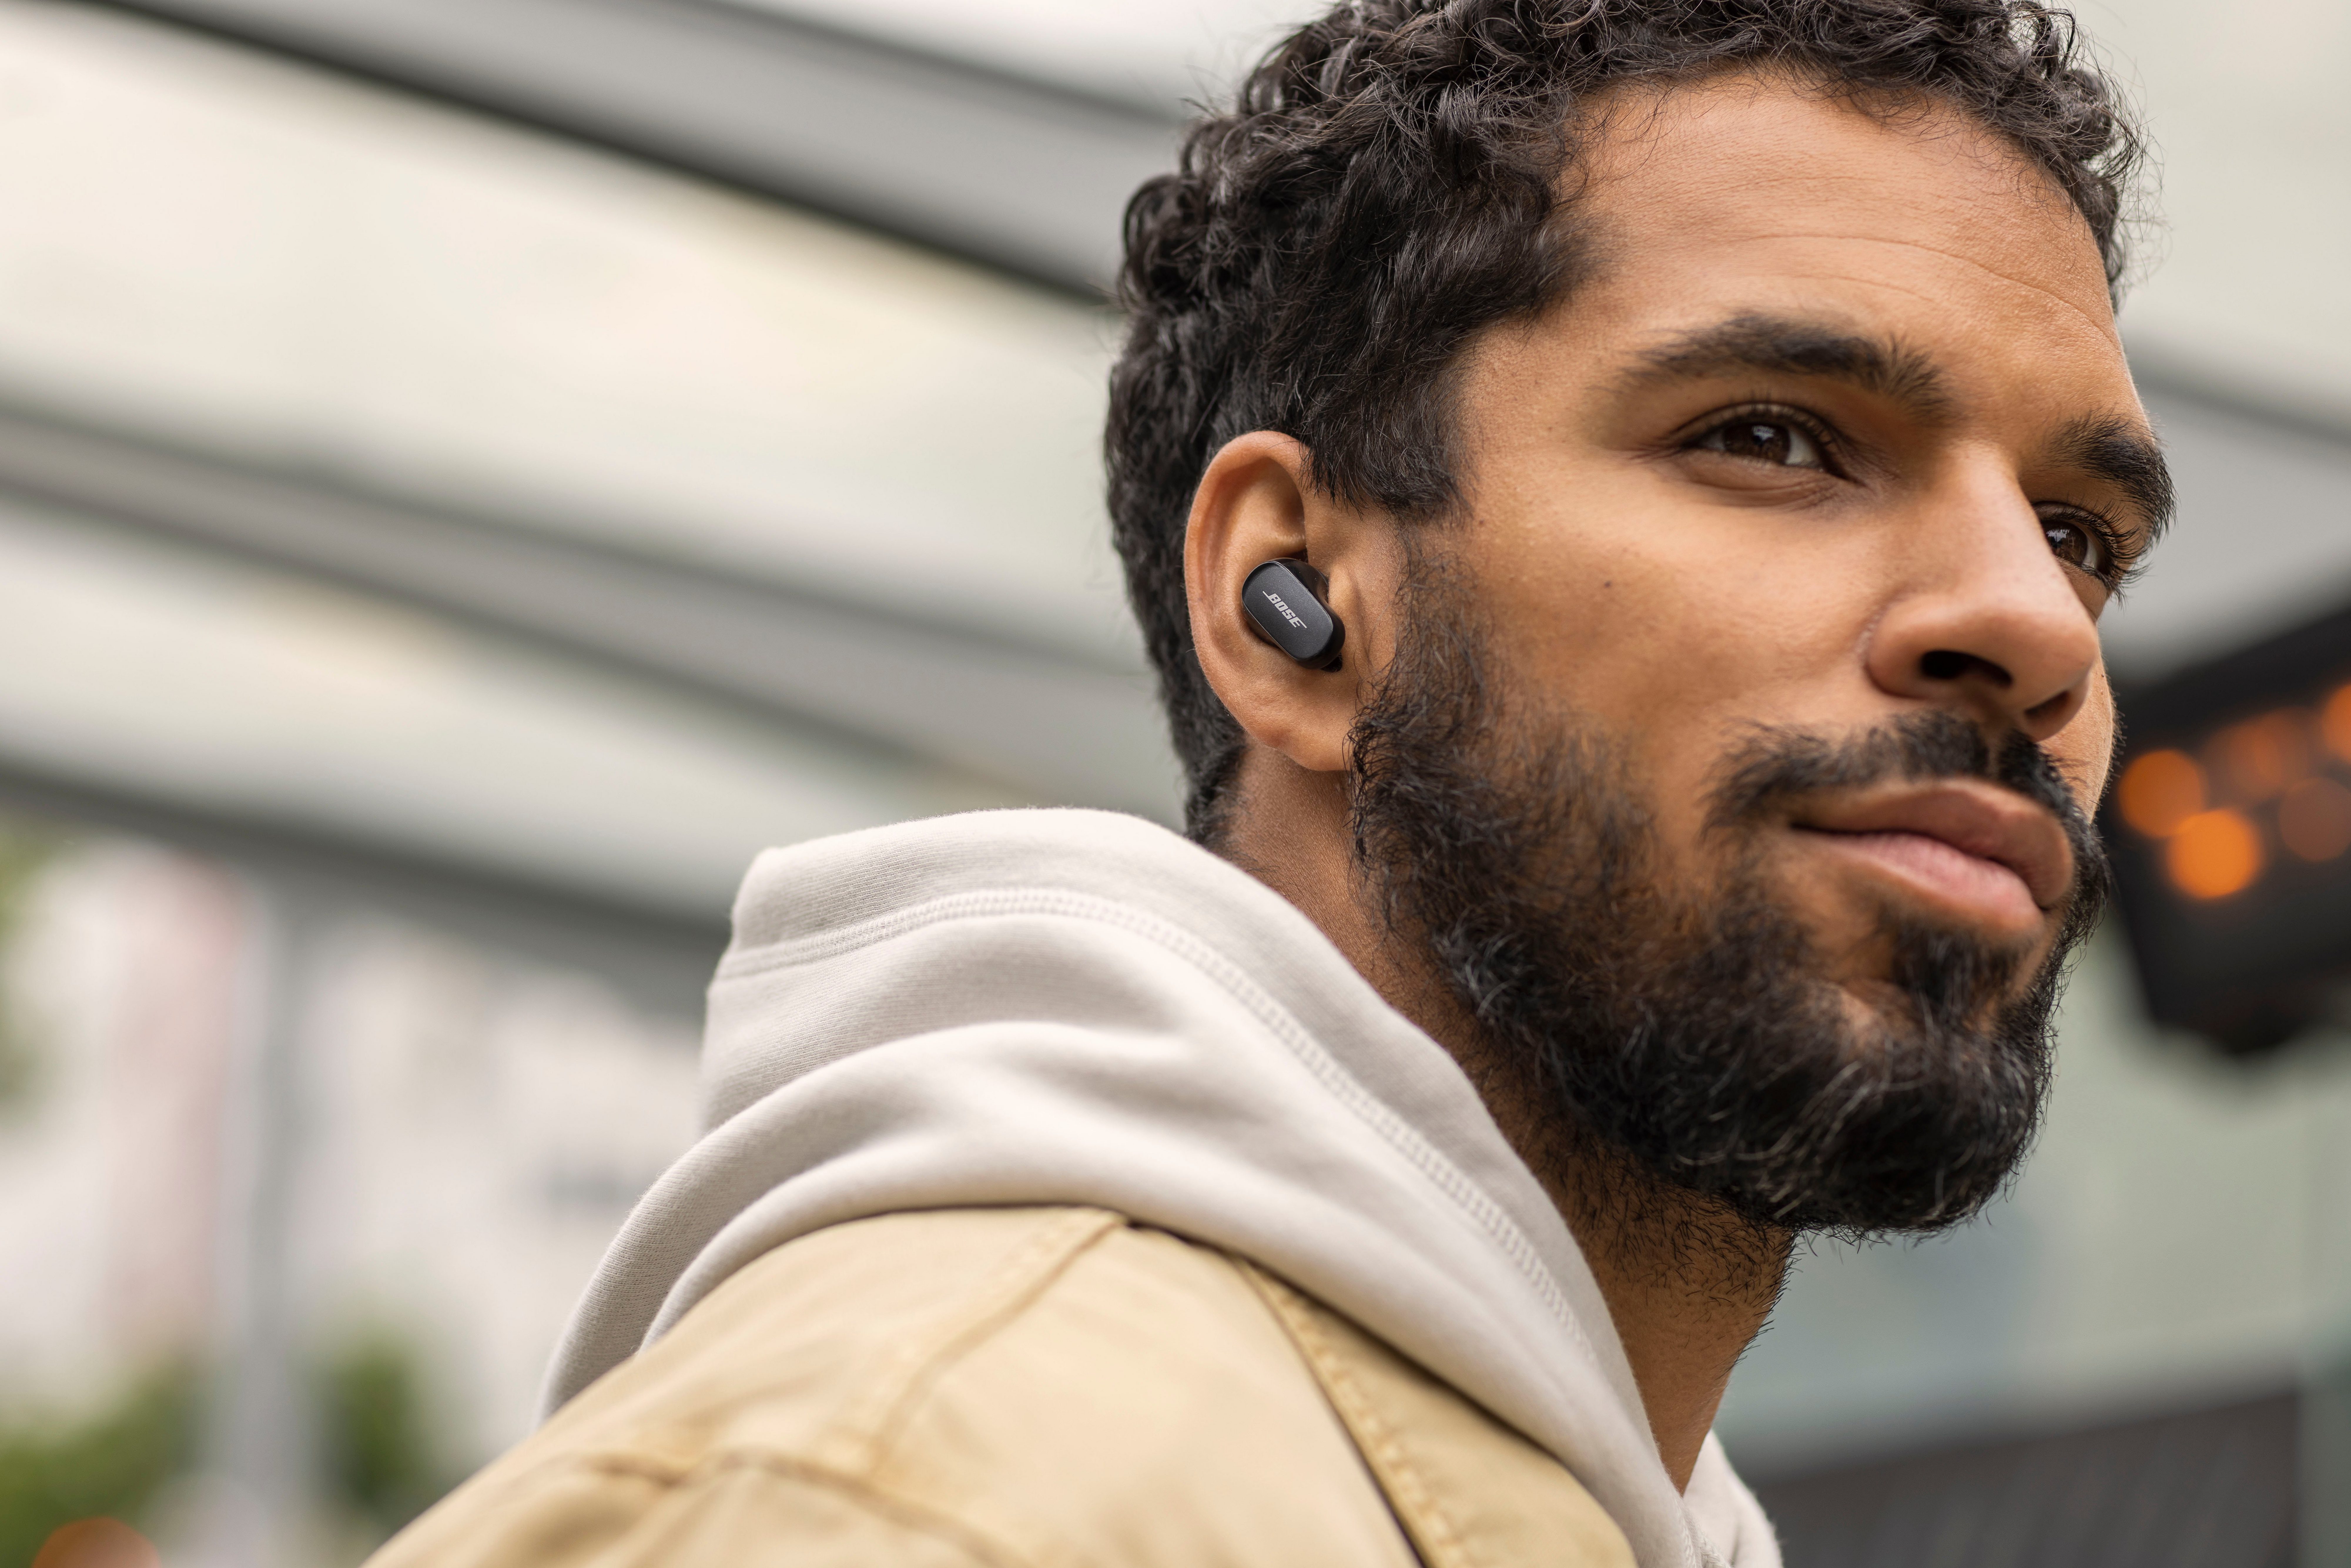 kabellose für Anrufe Steuerung integrierte mit Bose II Bluetooth, und wireless Klang) In-Ear-Kopfhörer QuietComfort® Musik, personalisiertem black Noise-Cancelling, Earbuds (Freisprechfunktion, In-Ear-Kopfhörer Lärmreduzierung